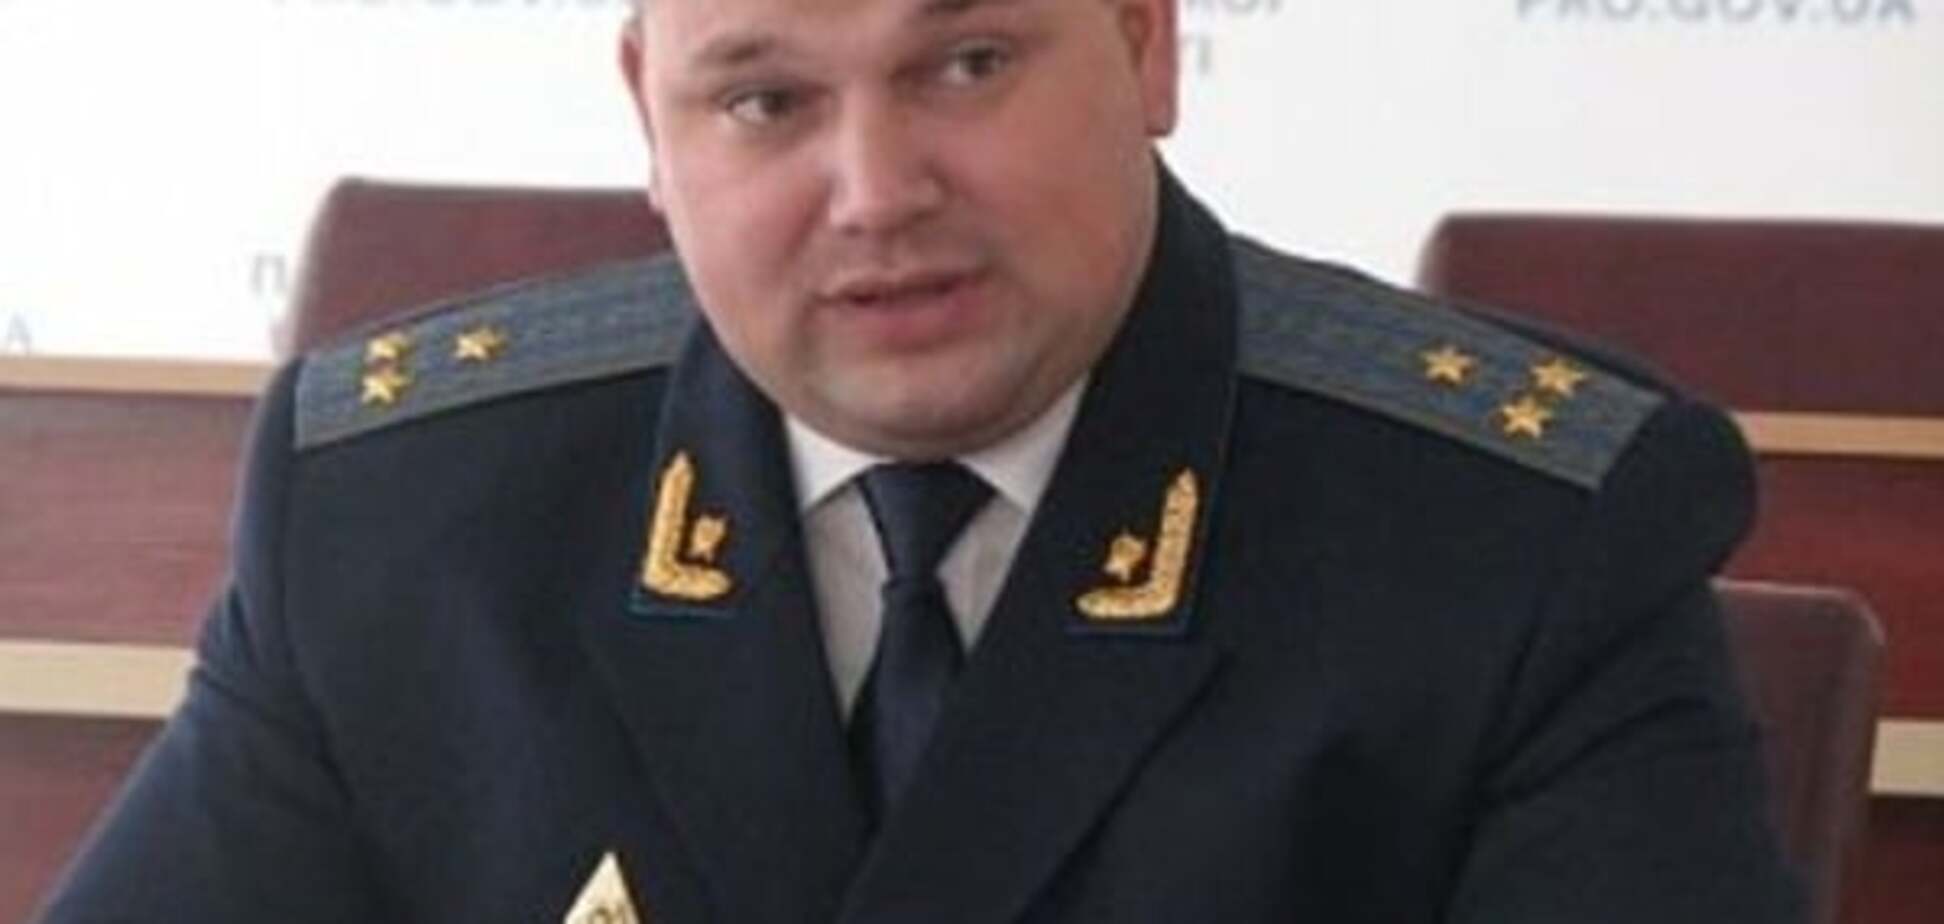 Андрей Боровик